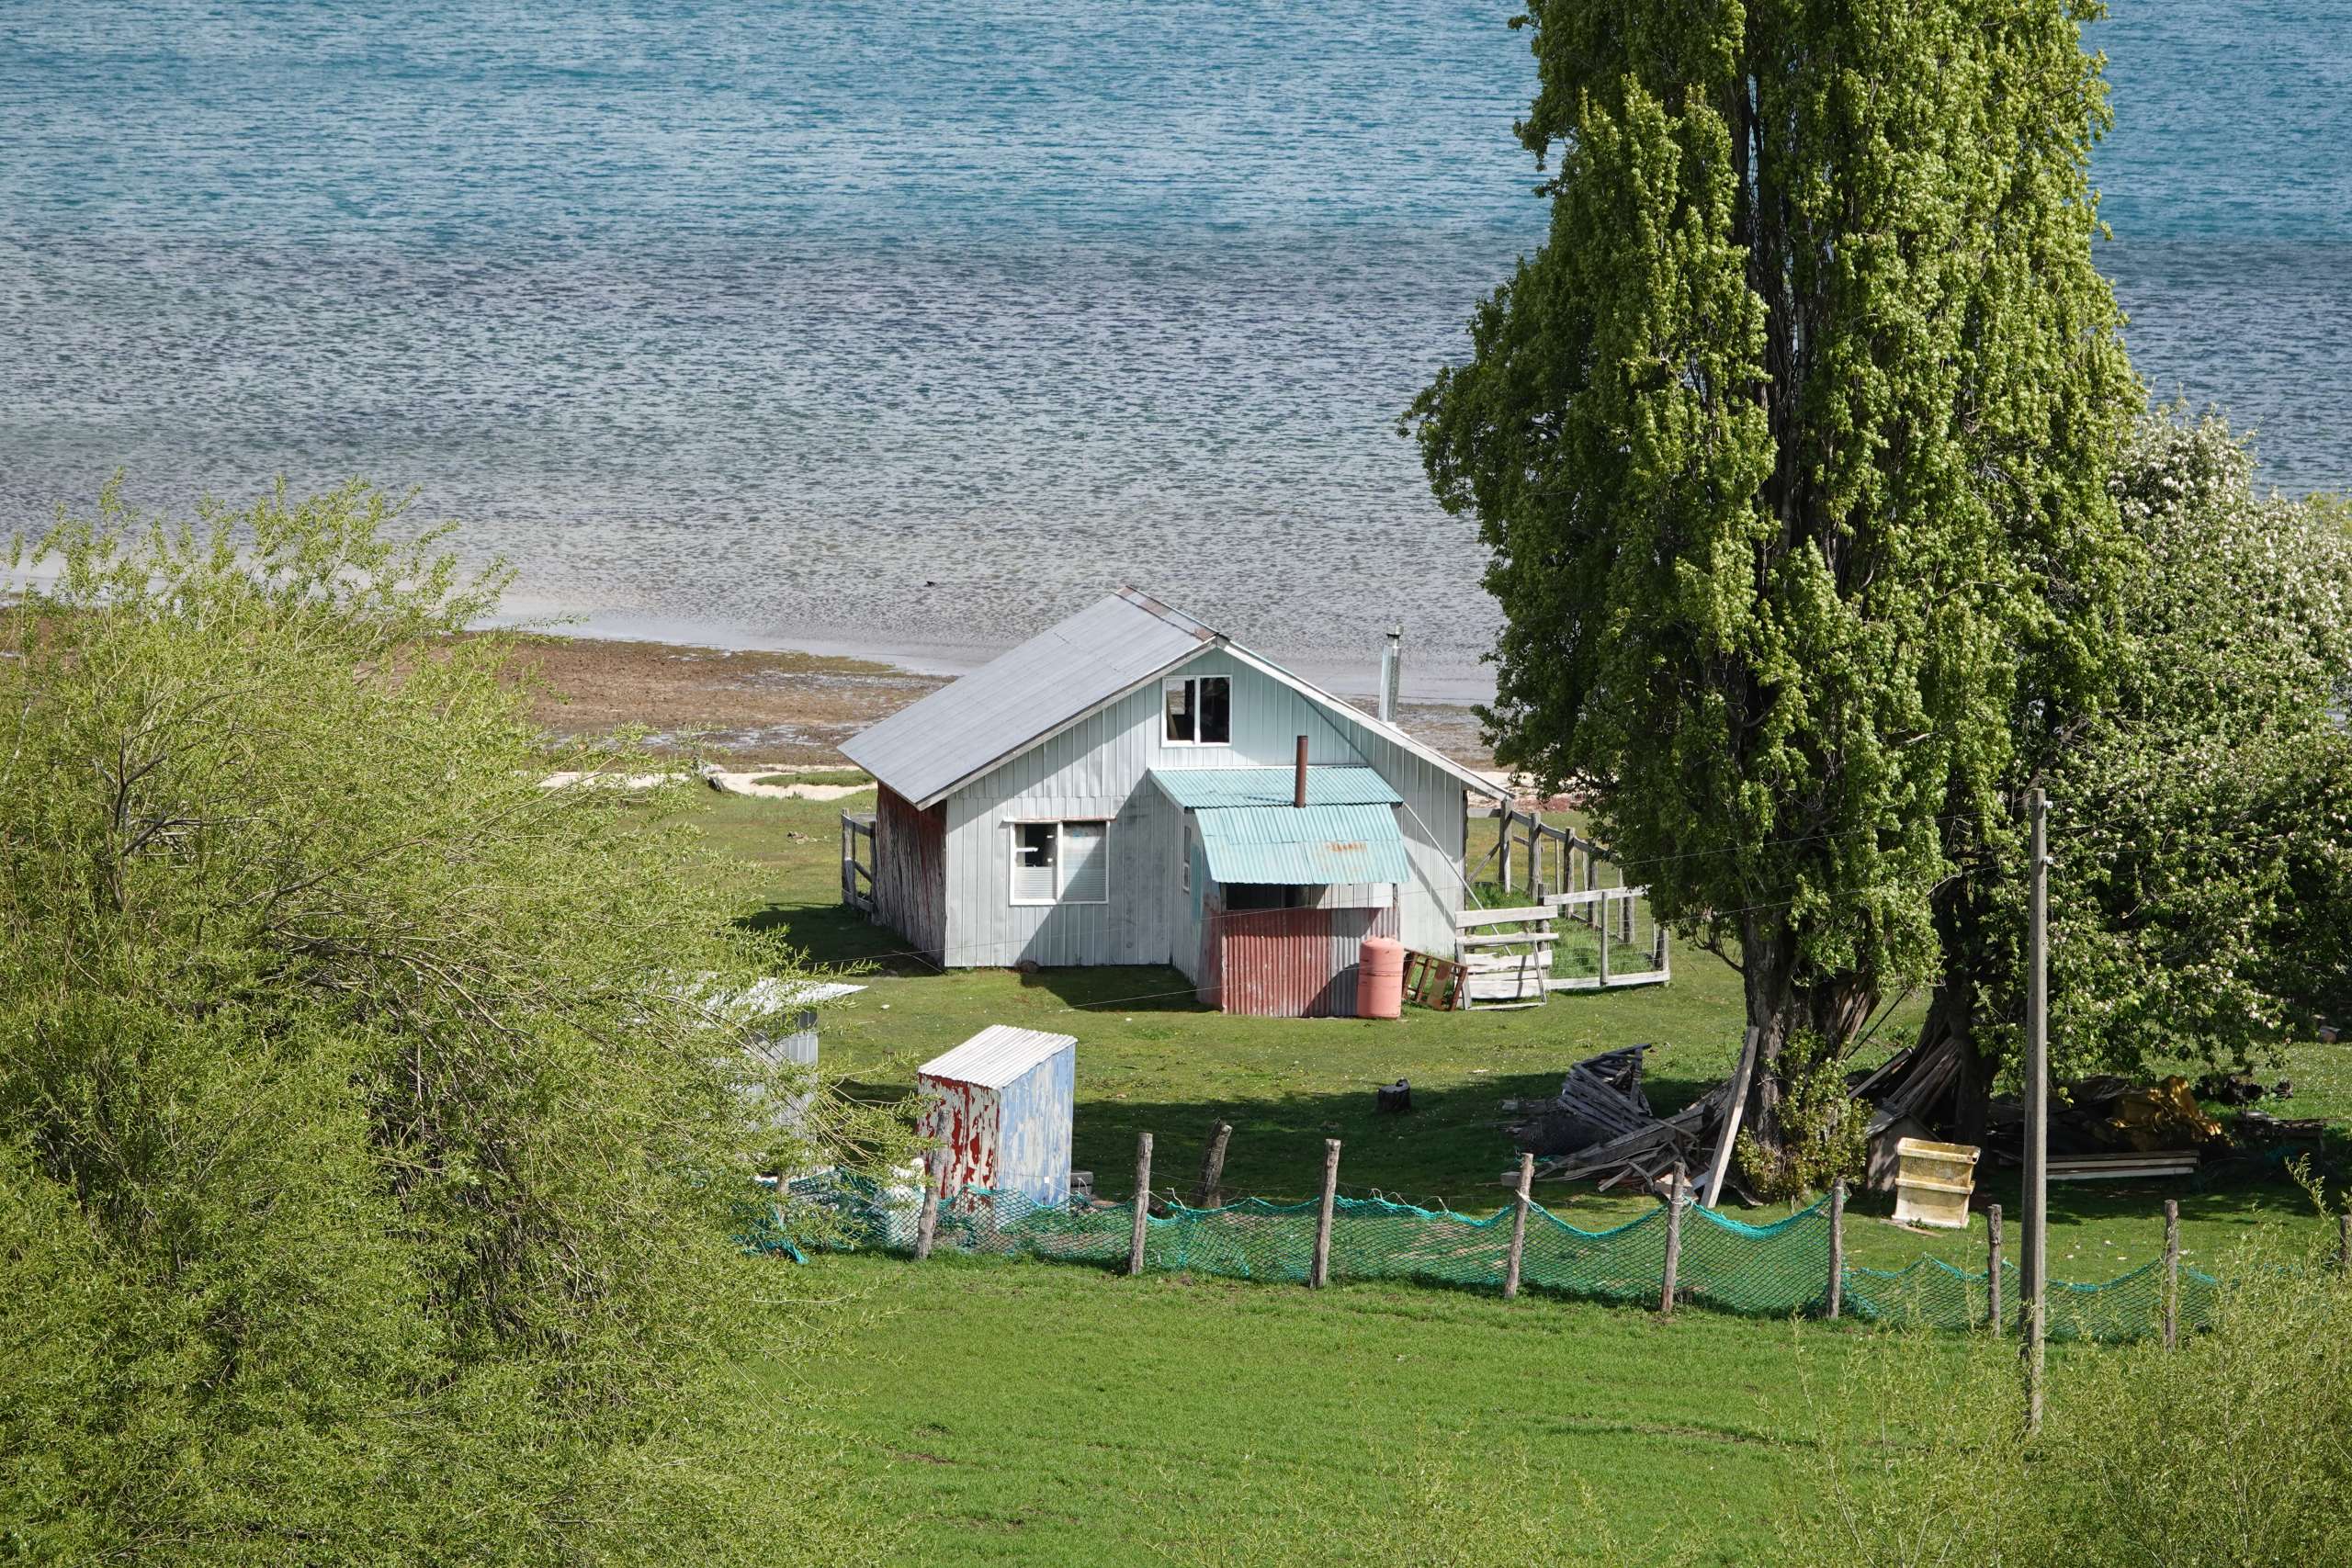 Maison isolée en Patagonie